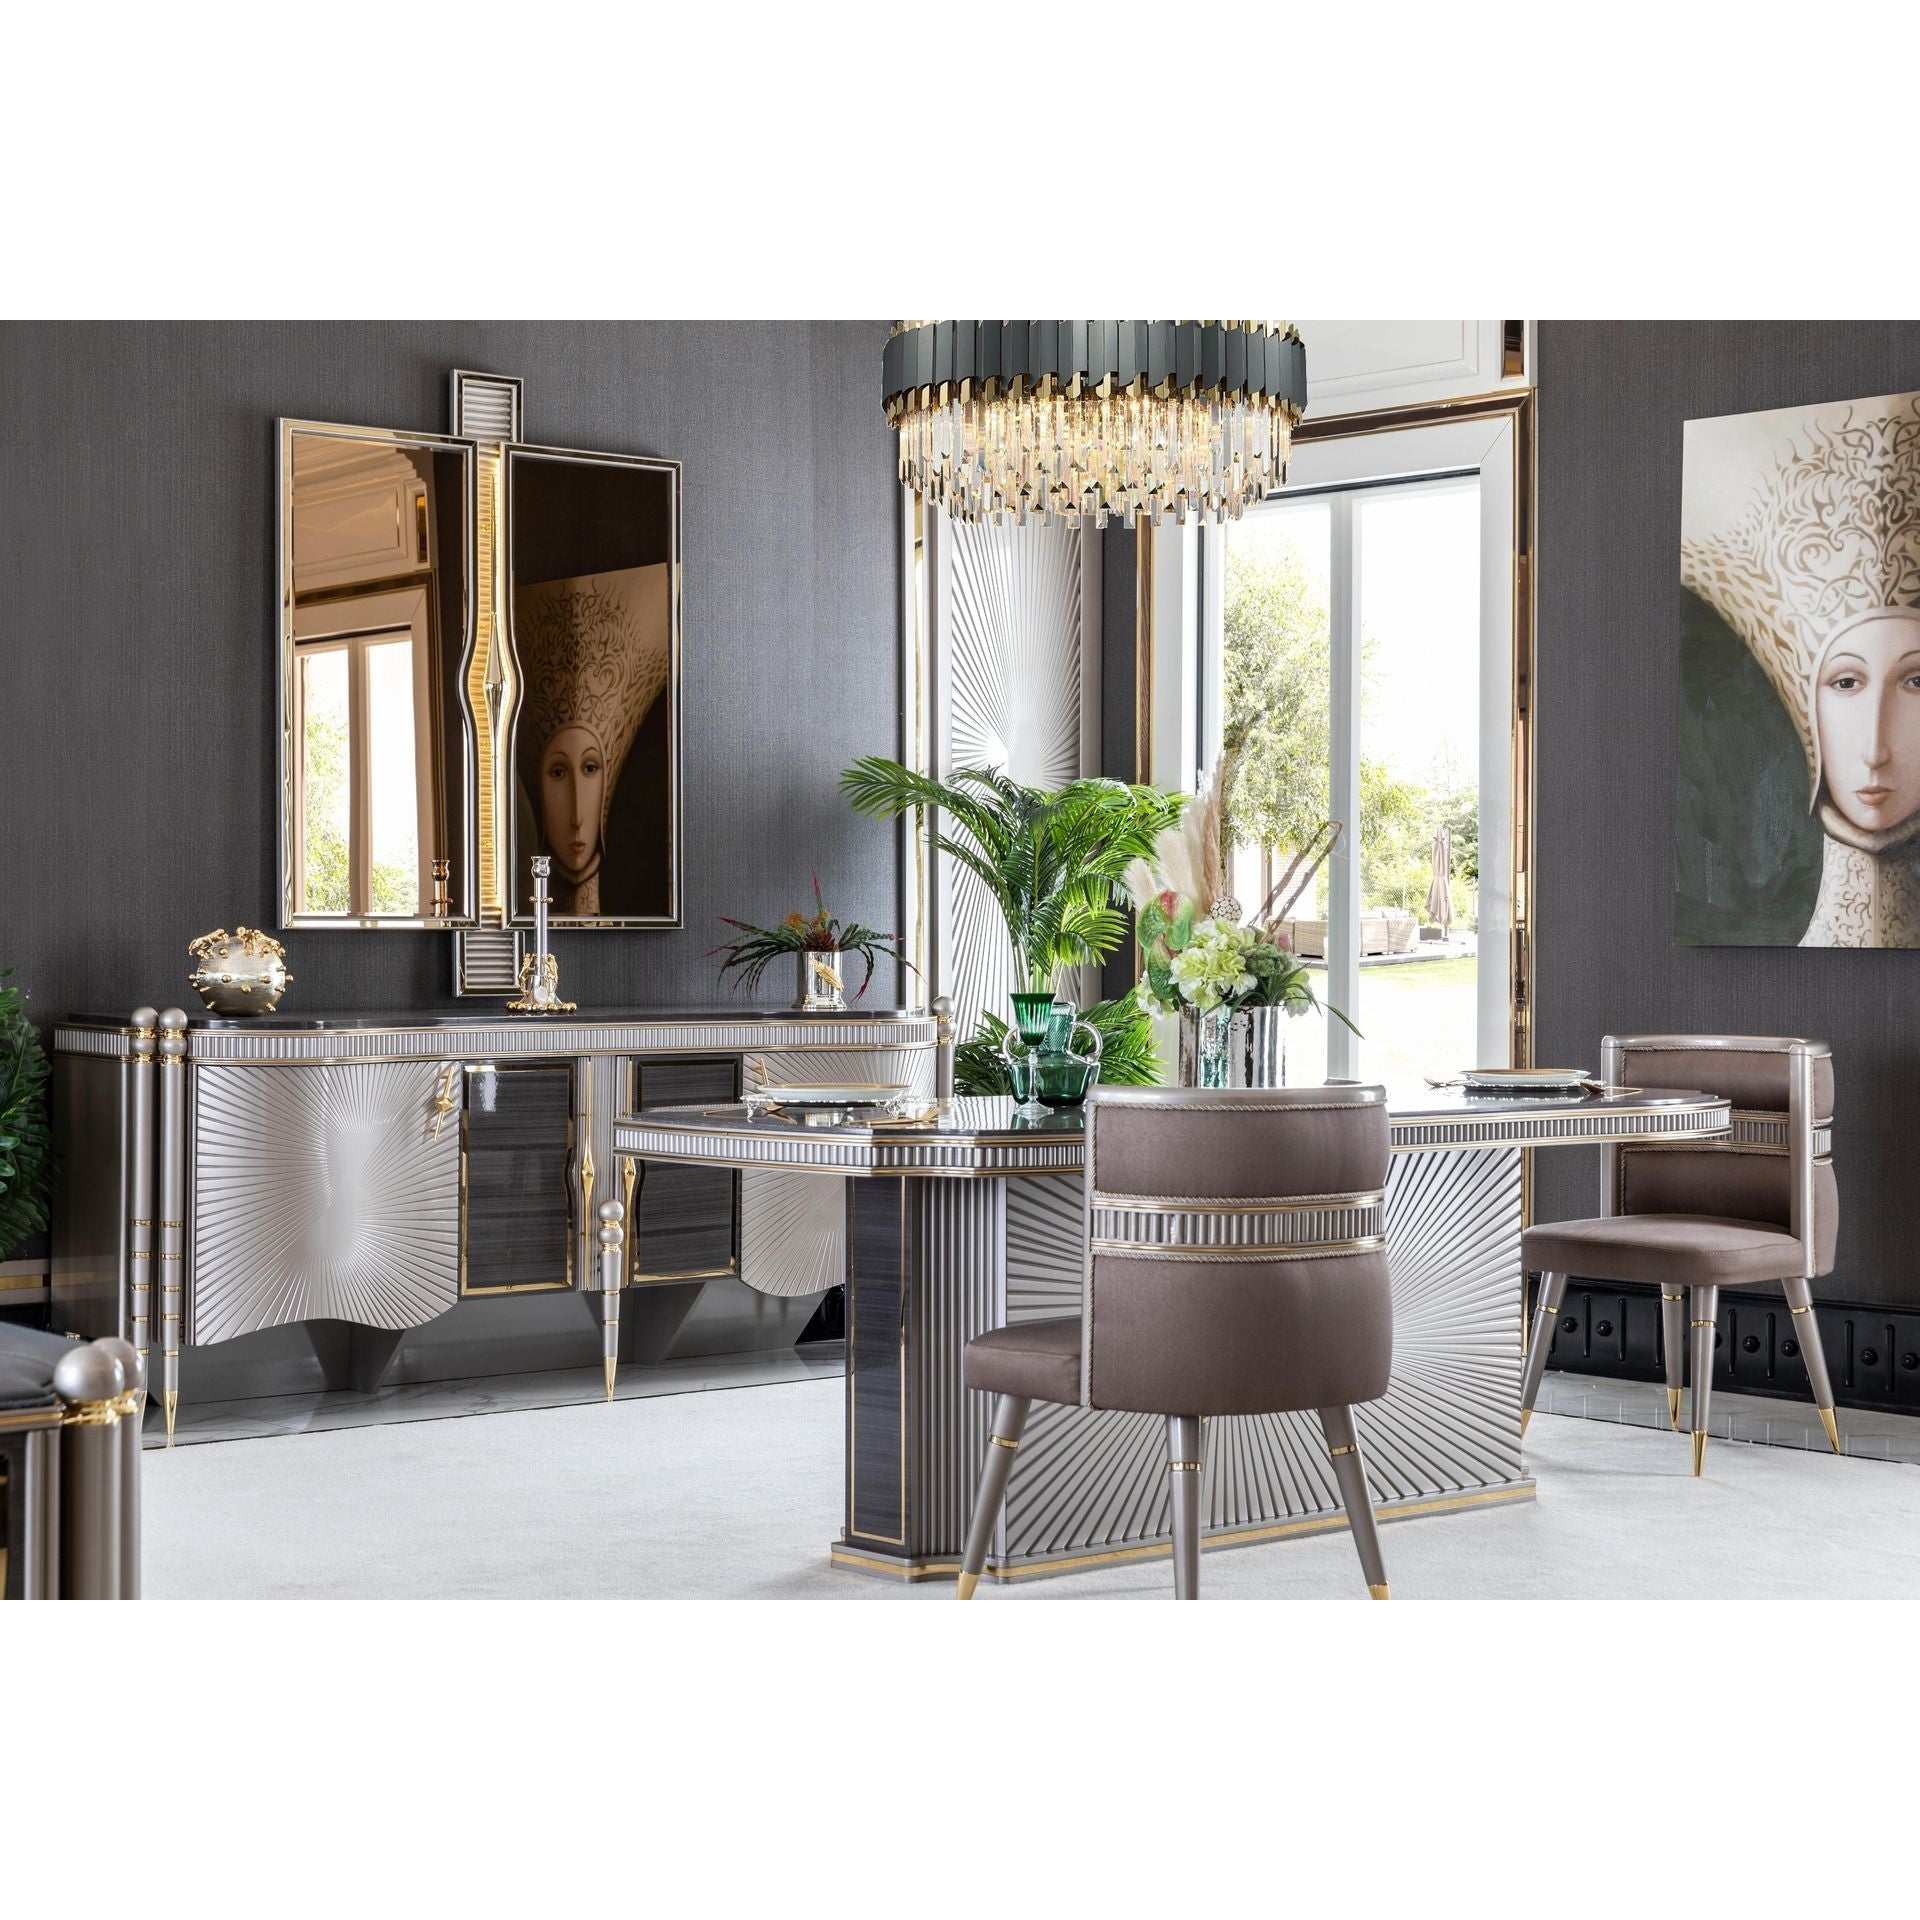 Bentl Spegel - LINE Furniture Group